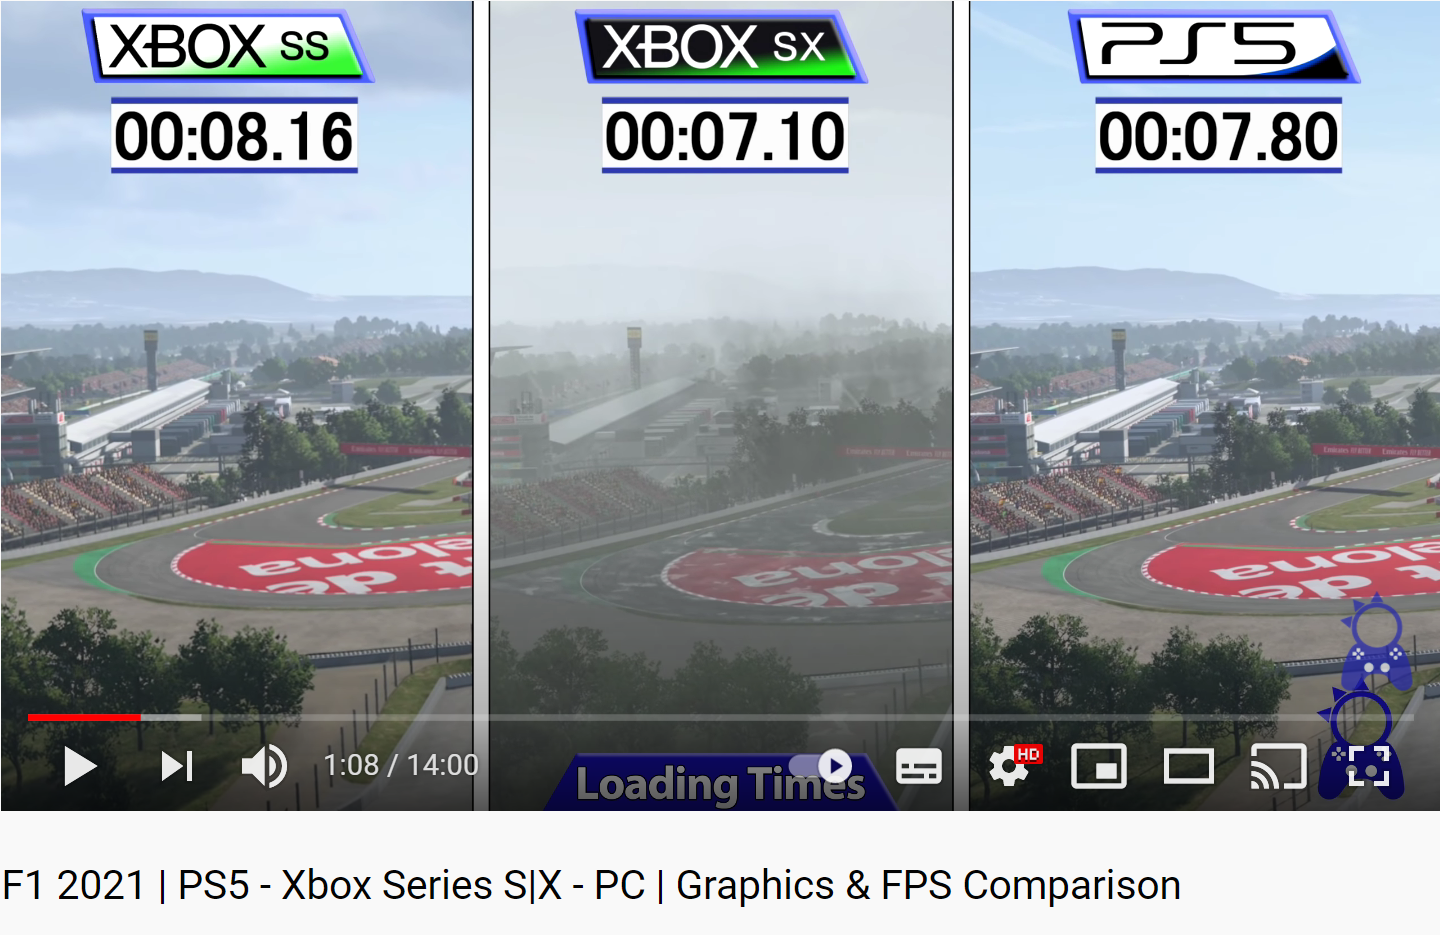 Xbox one s или ps4 slim: сравнение, что лучше